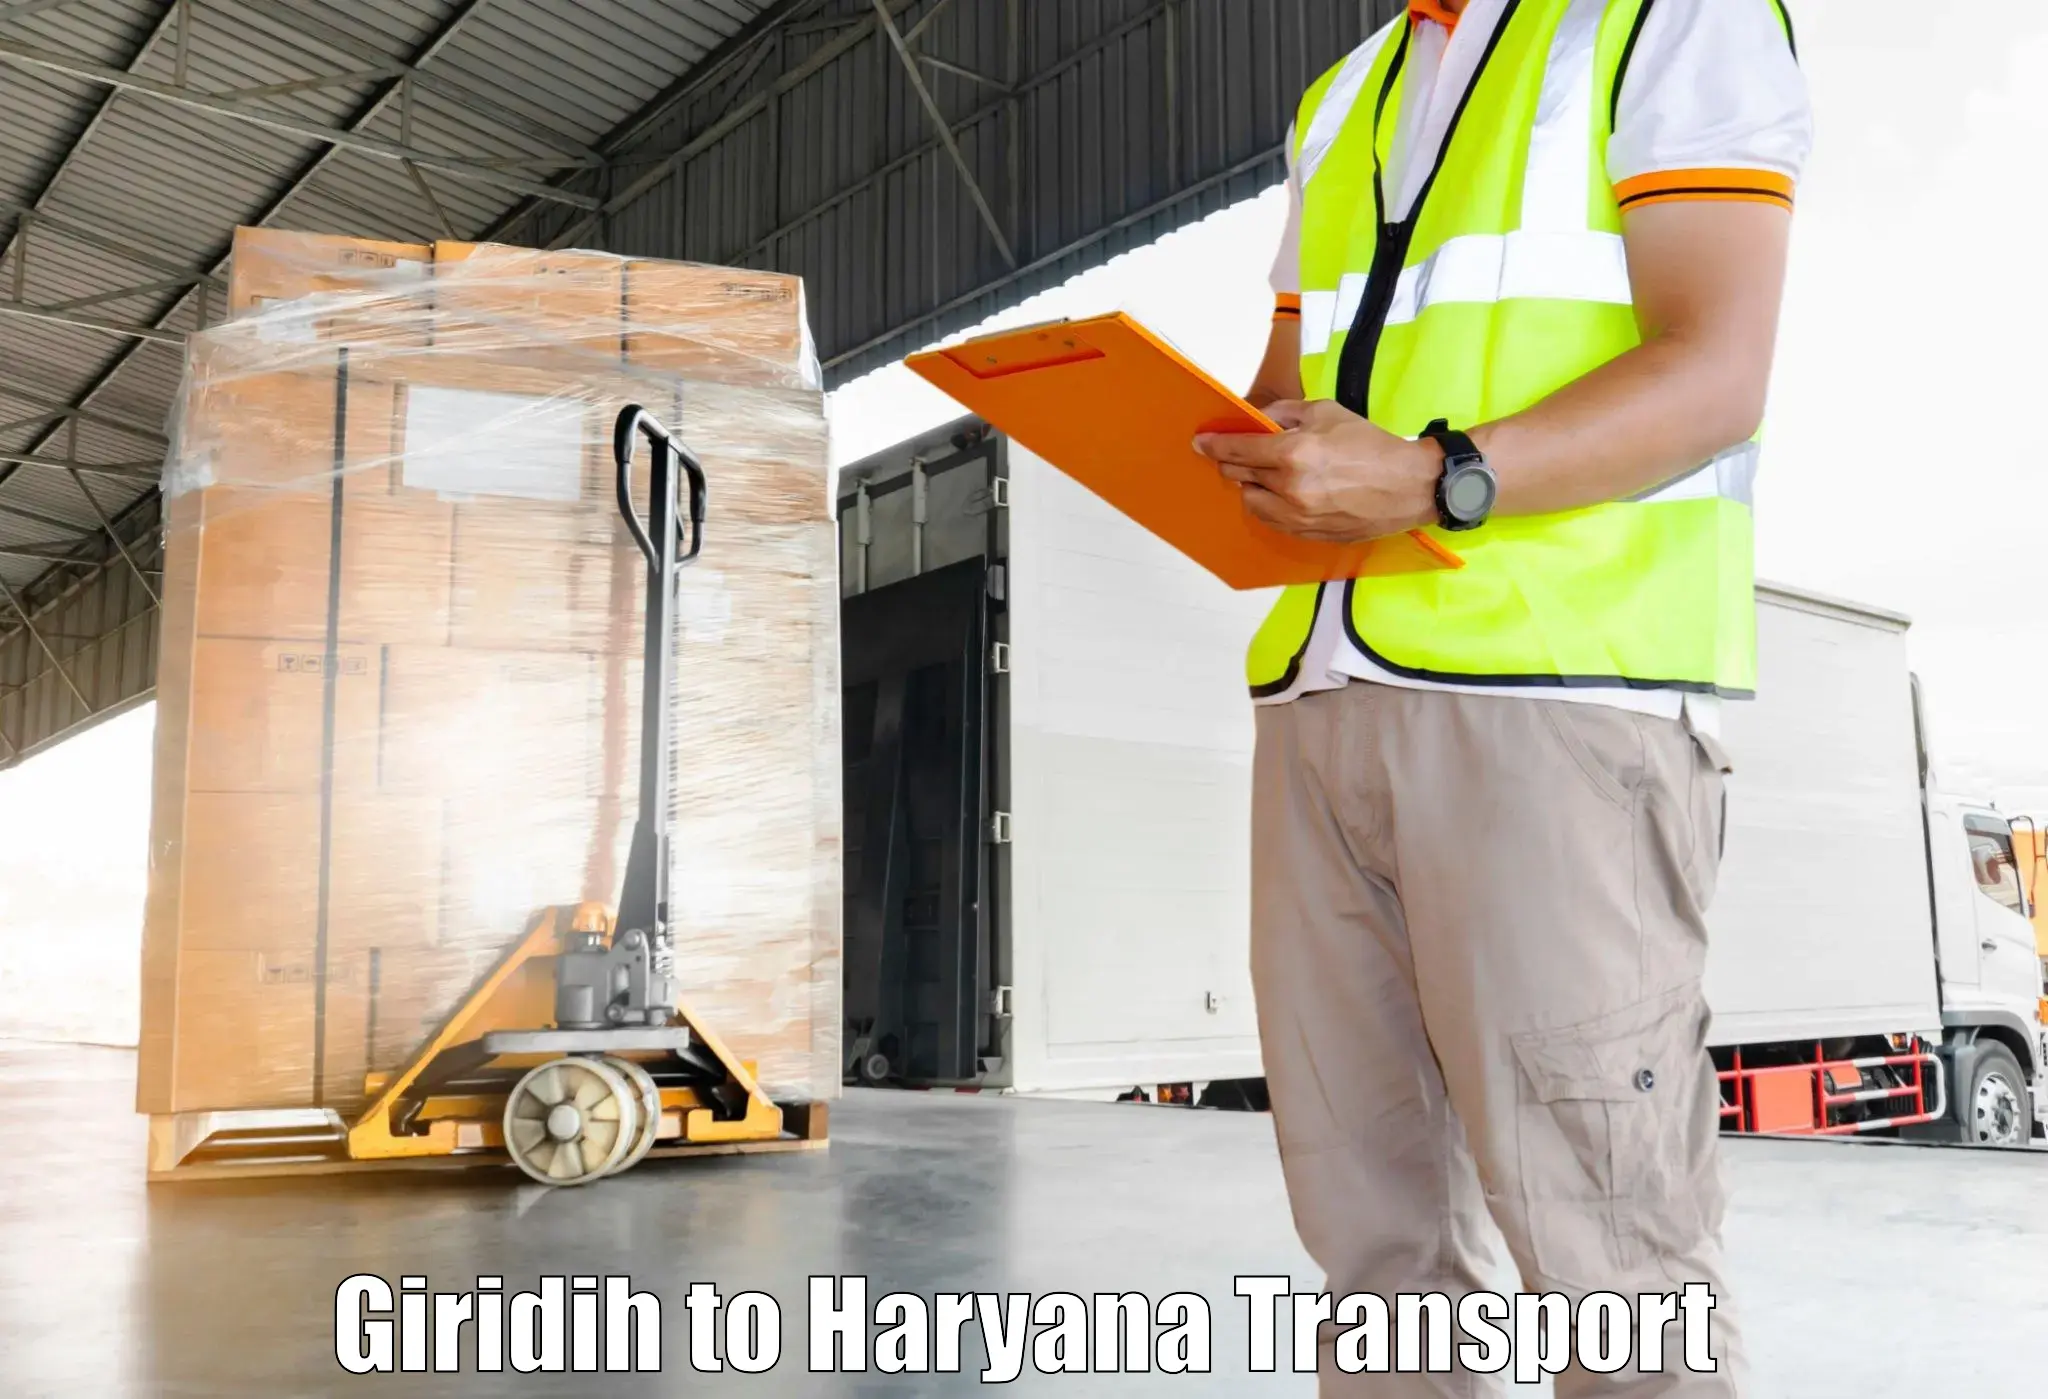 Furniture transport service Giridih to Kalanwali